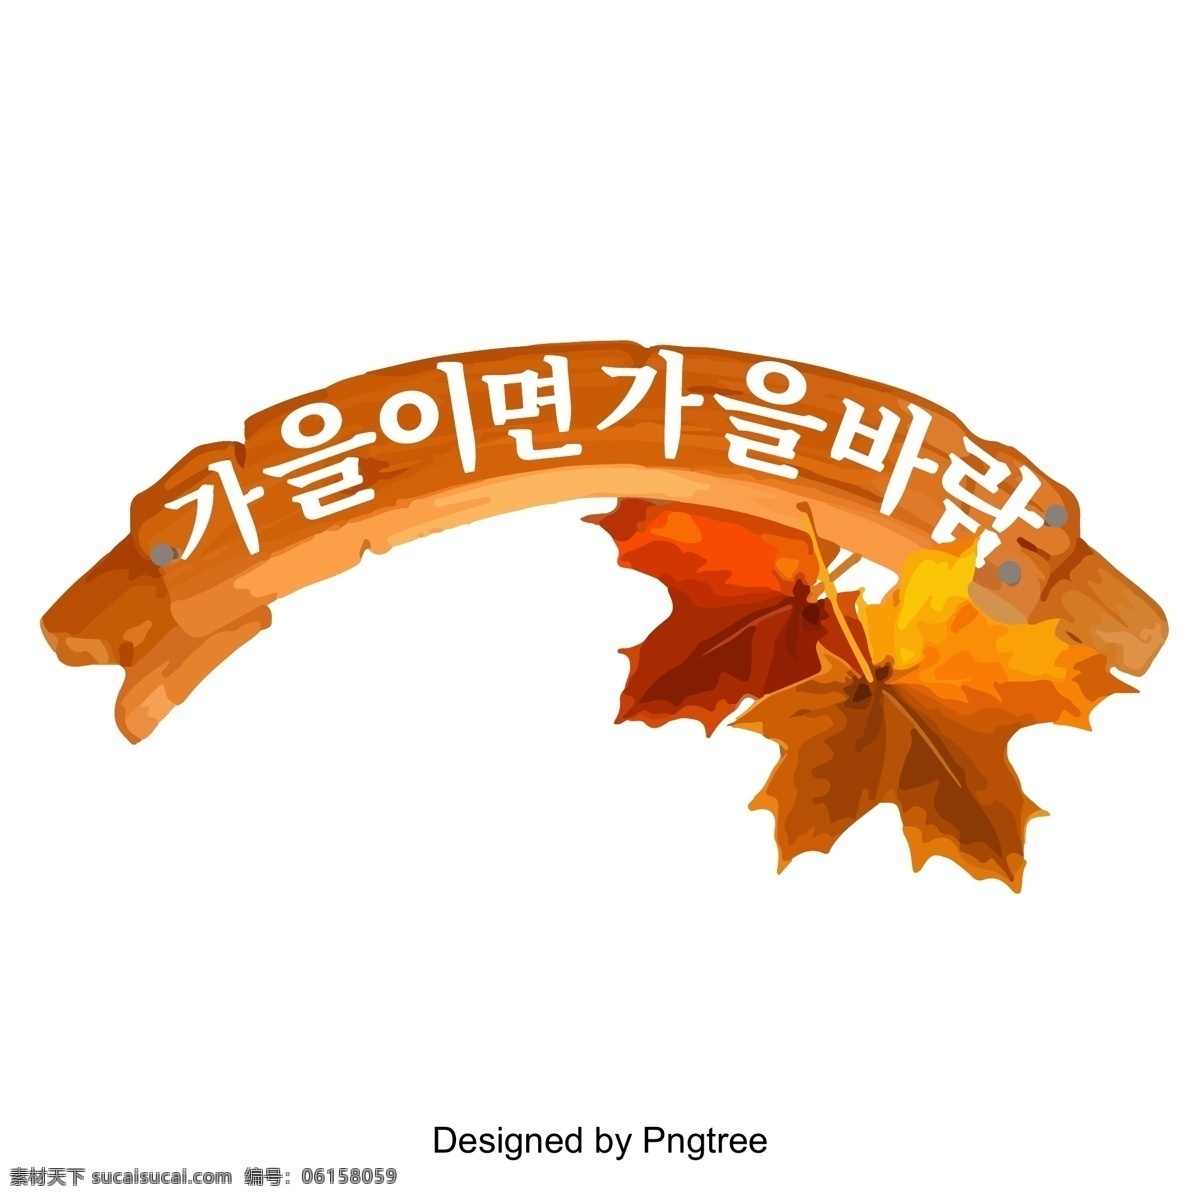 秋天 季节 韩国 字体 标题 秋天是秋风 韩文 不断 变化 字形 字体设计 字体的效果 韩国字体 秋季